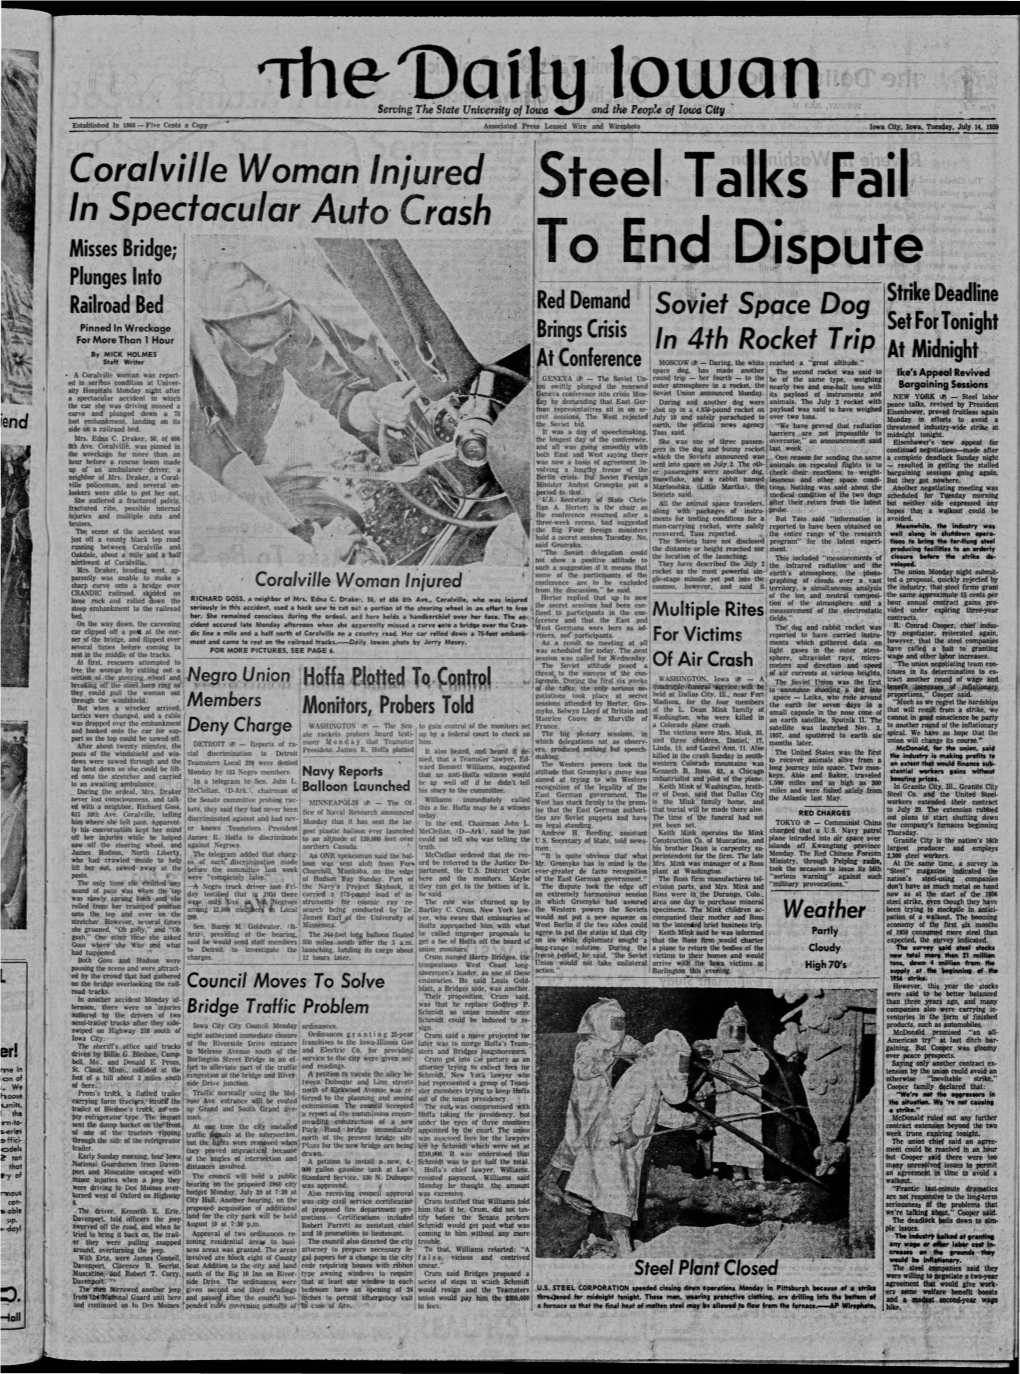 Daily Iowan (Iowa City, Iowa), 1959-07-14